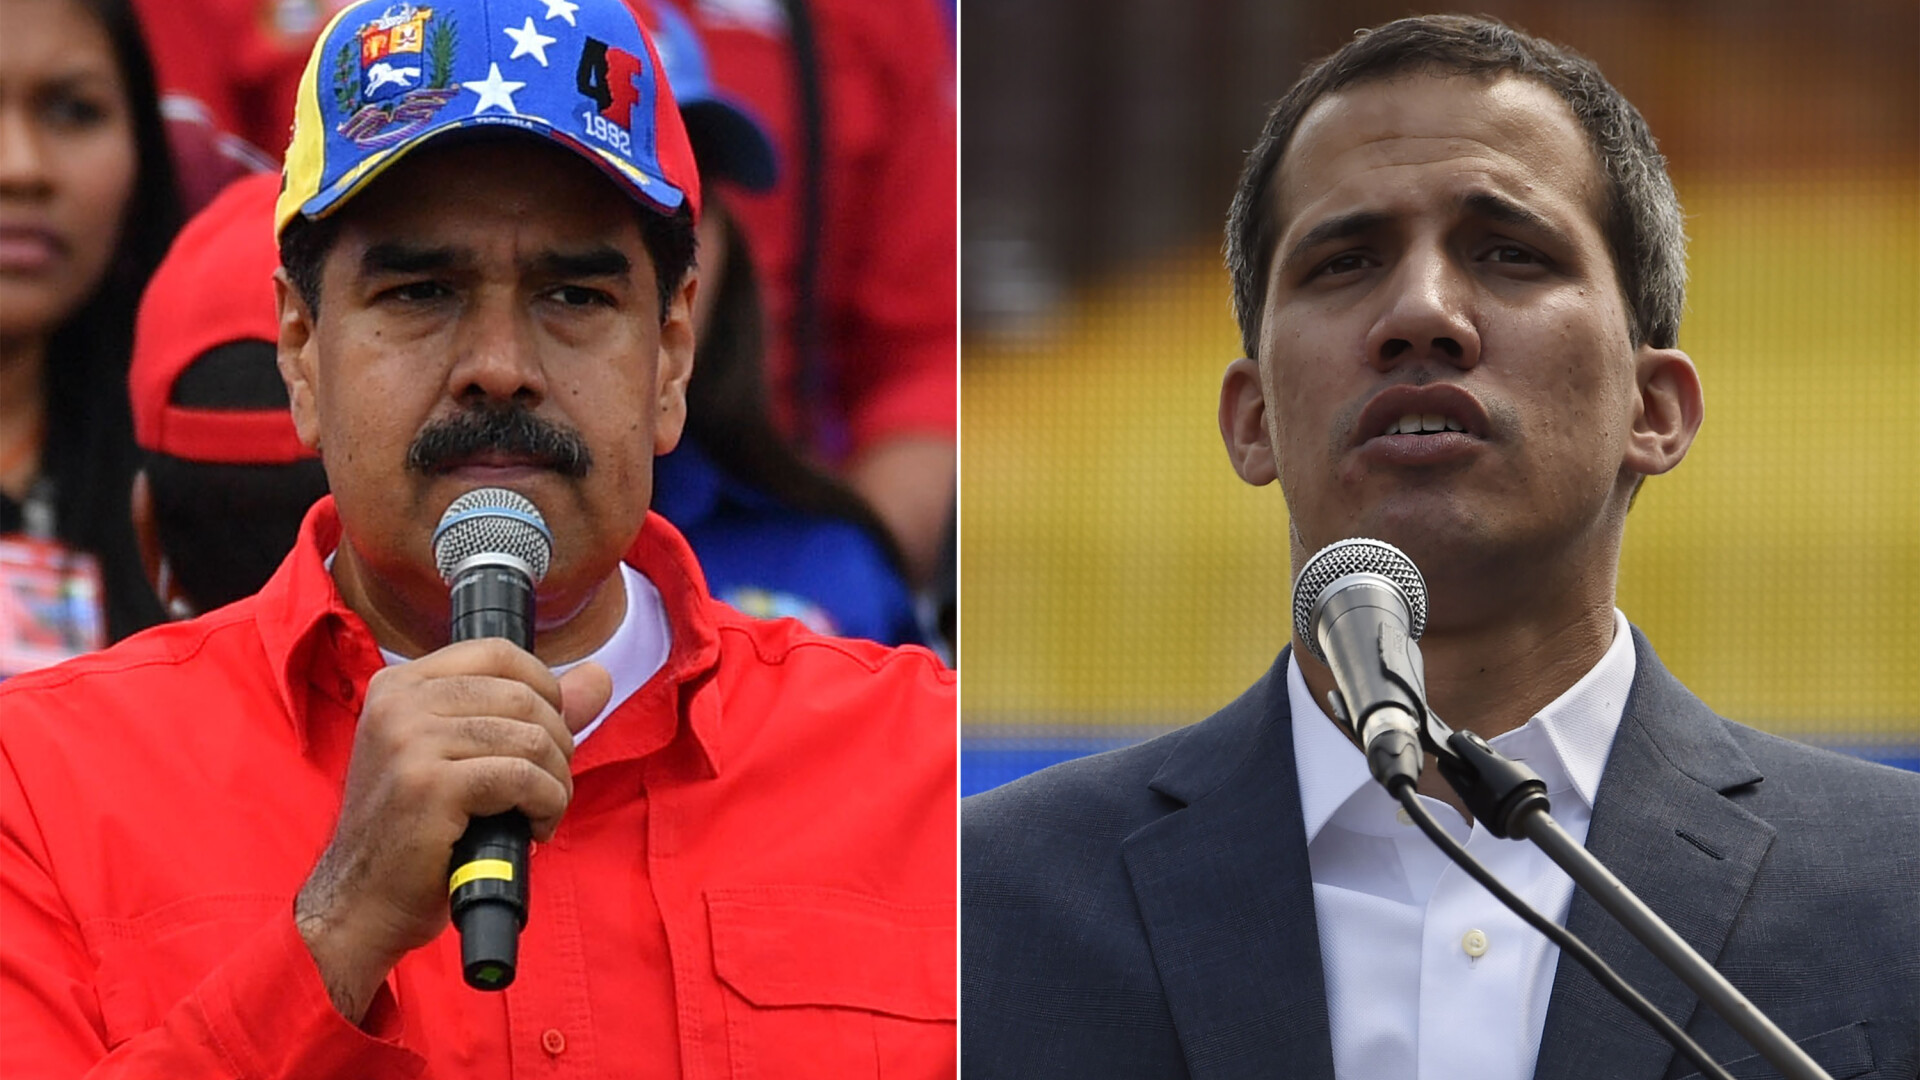 Maduro vrea alegeri anticipate: 